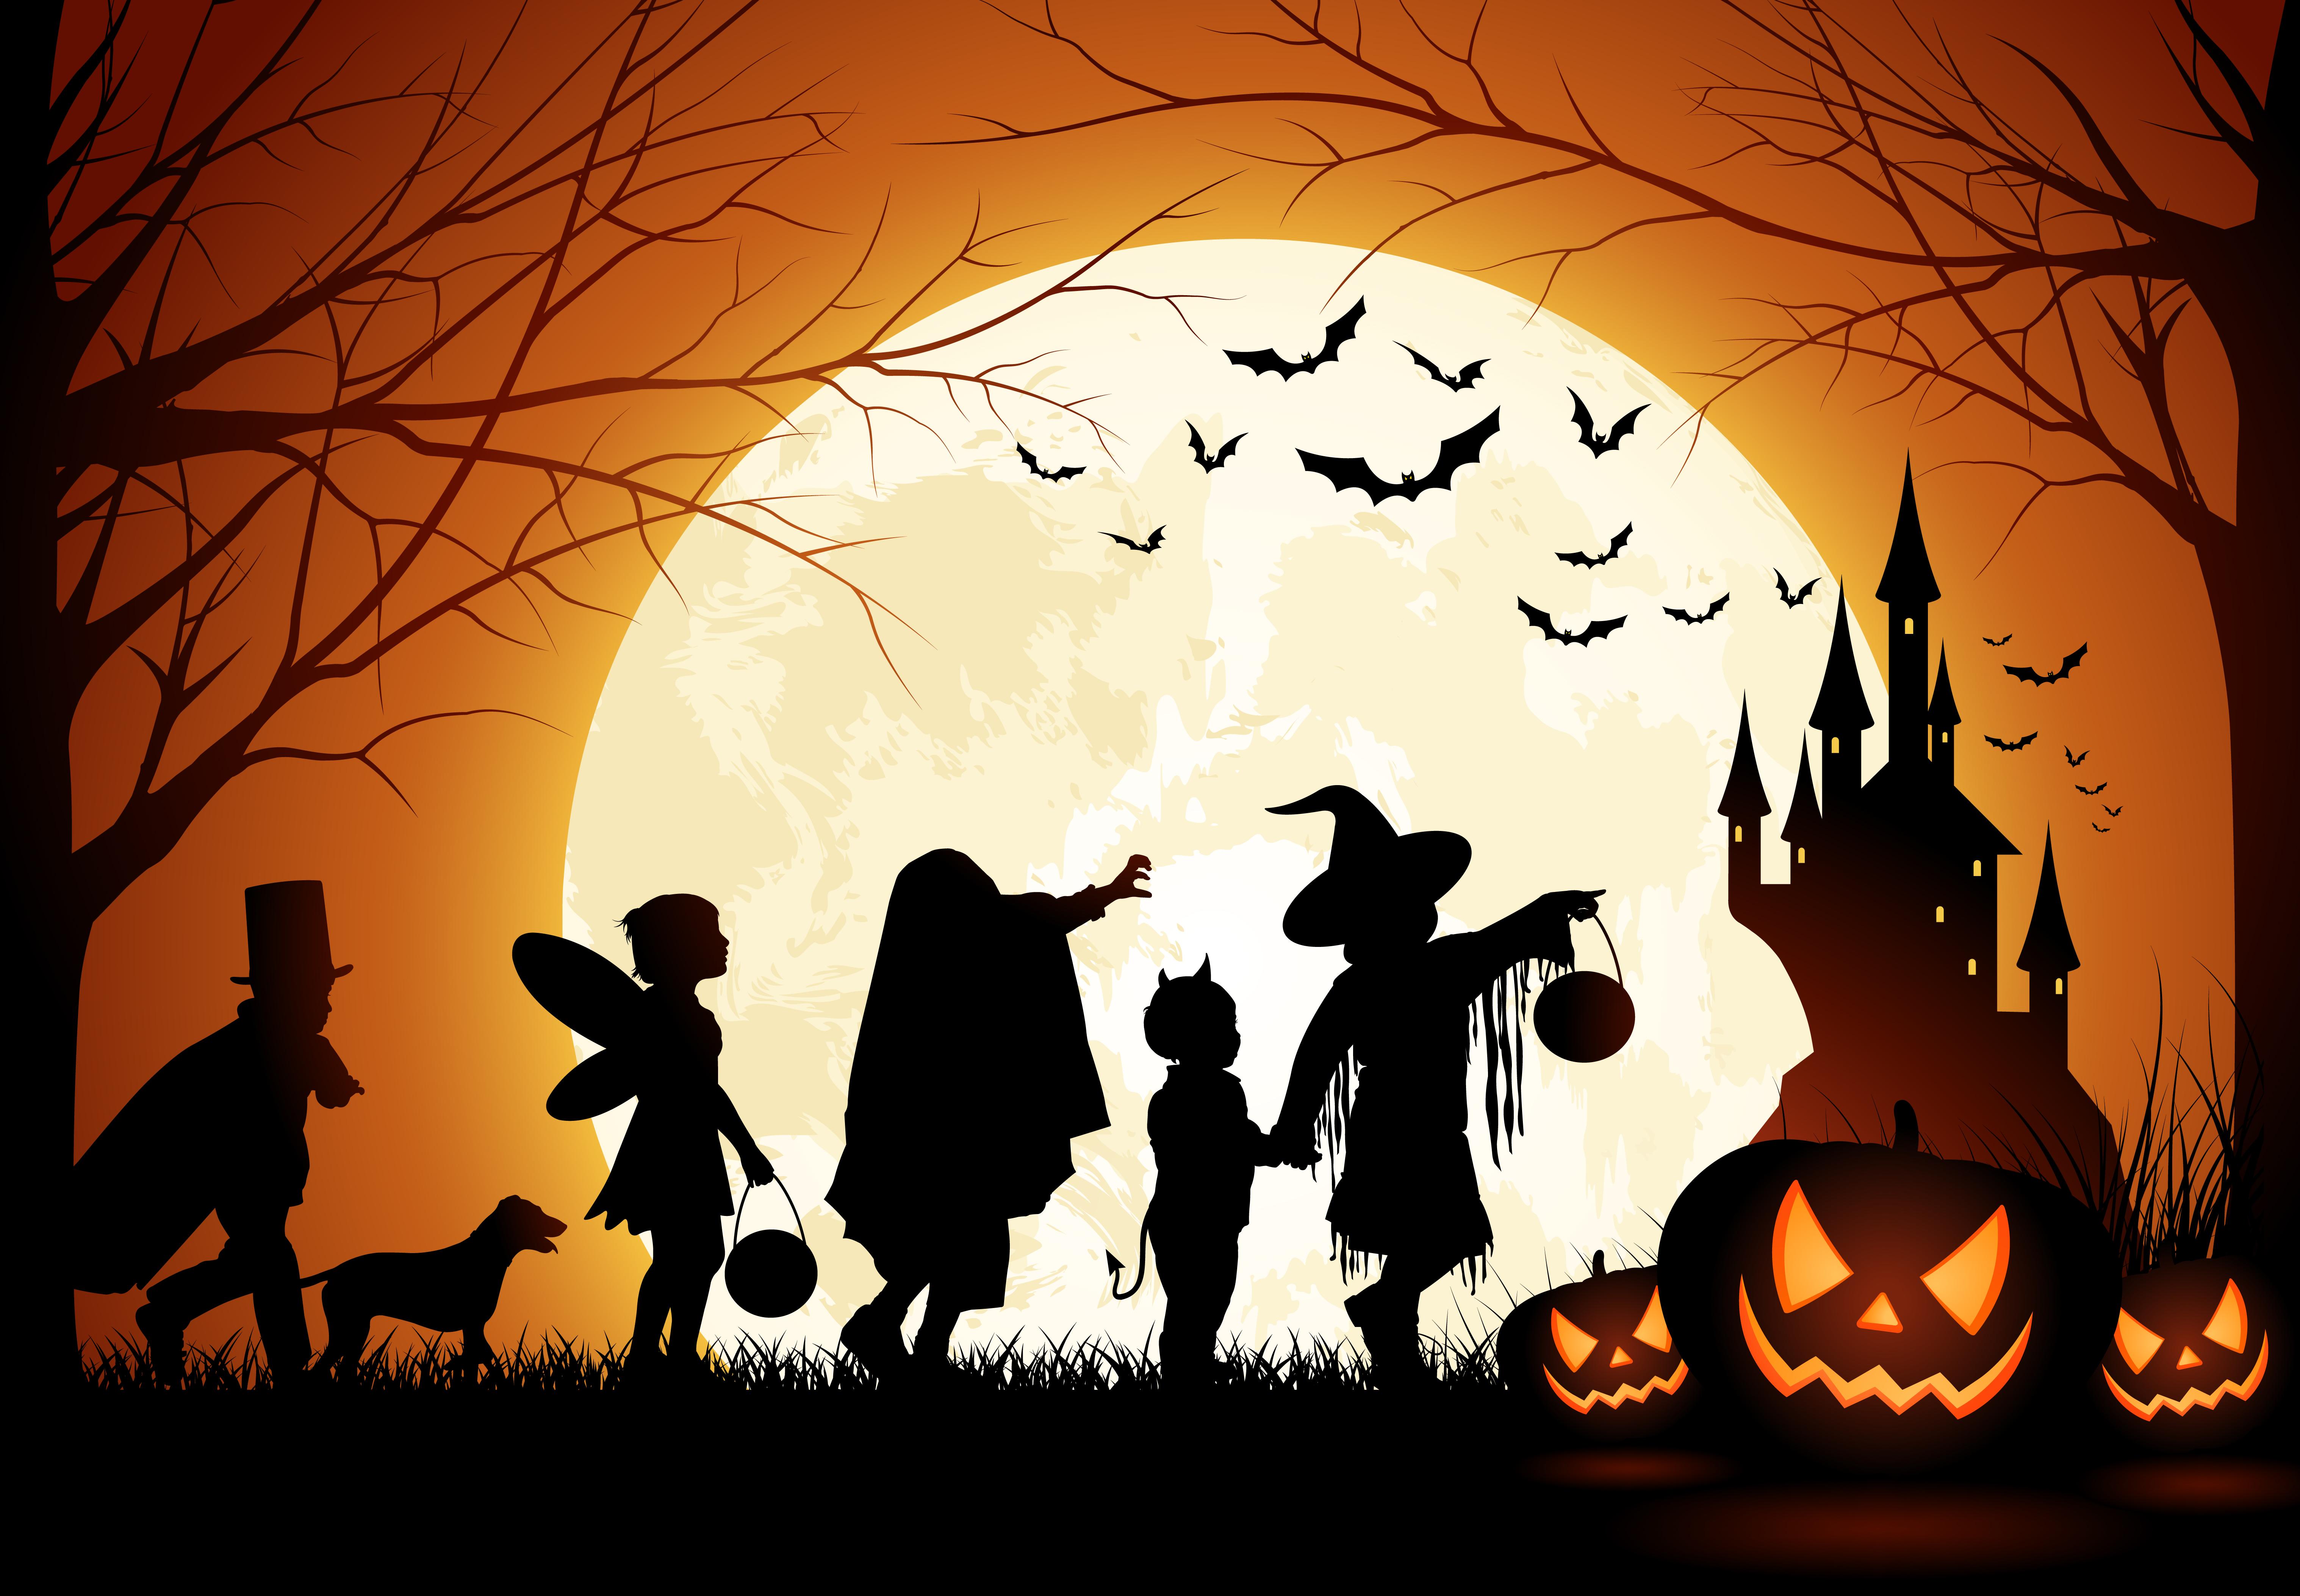 Llega Halloween pero… ¿De dónde salen los fantasmas, brujas y calabazas? |  kuskitkd